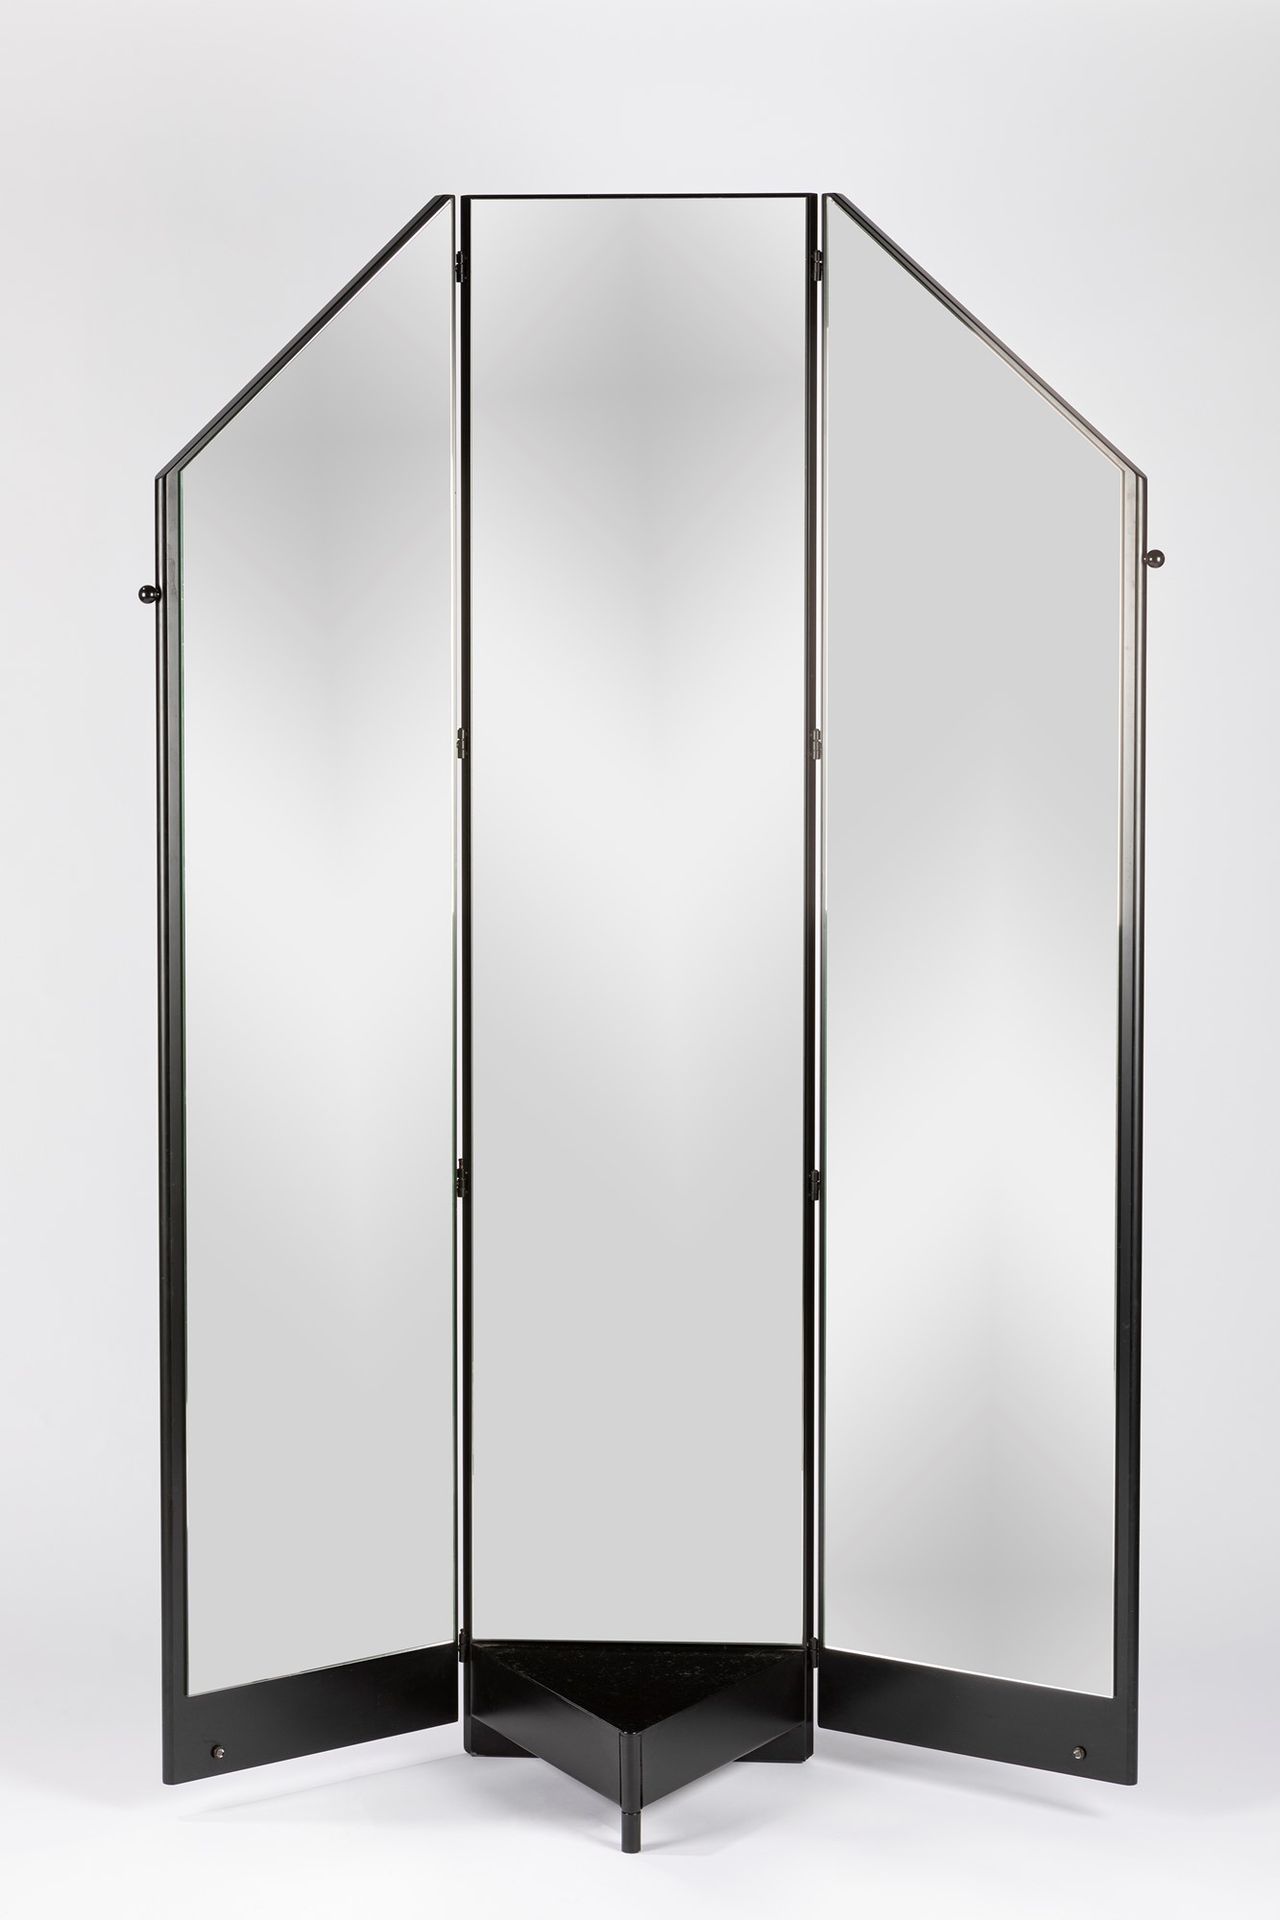 Manifattura Italiana Bodenspiegel, 1980 ca.

H 170 x 115 cm
mit drei Türen. Stru&hellip;